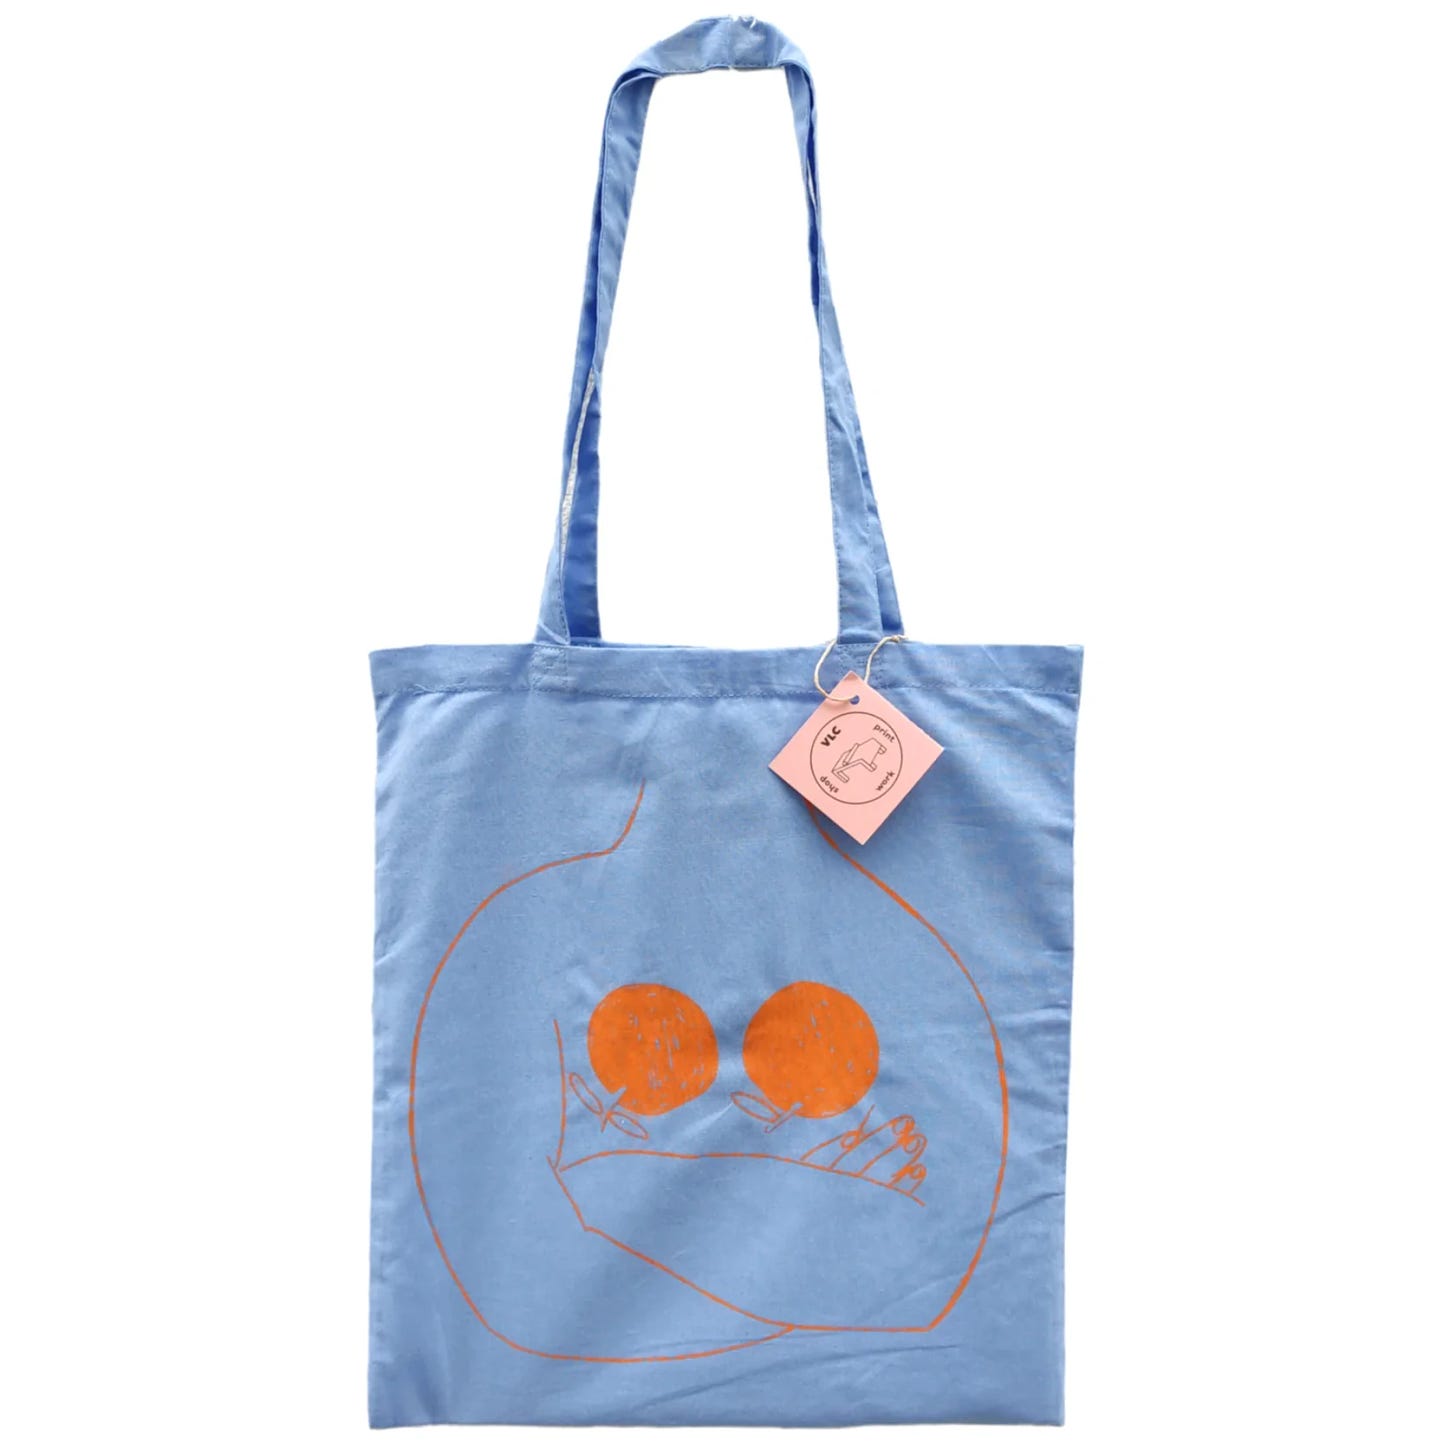 totebag de color azul con dibujo naranja ilustrada y serigrafiada por mar rubio en vlc print work shop en valencia ruzafa